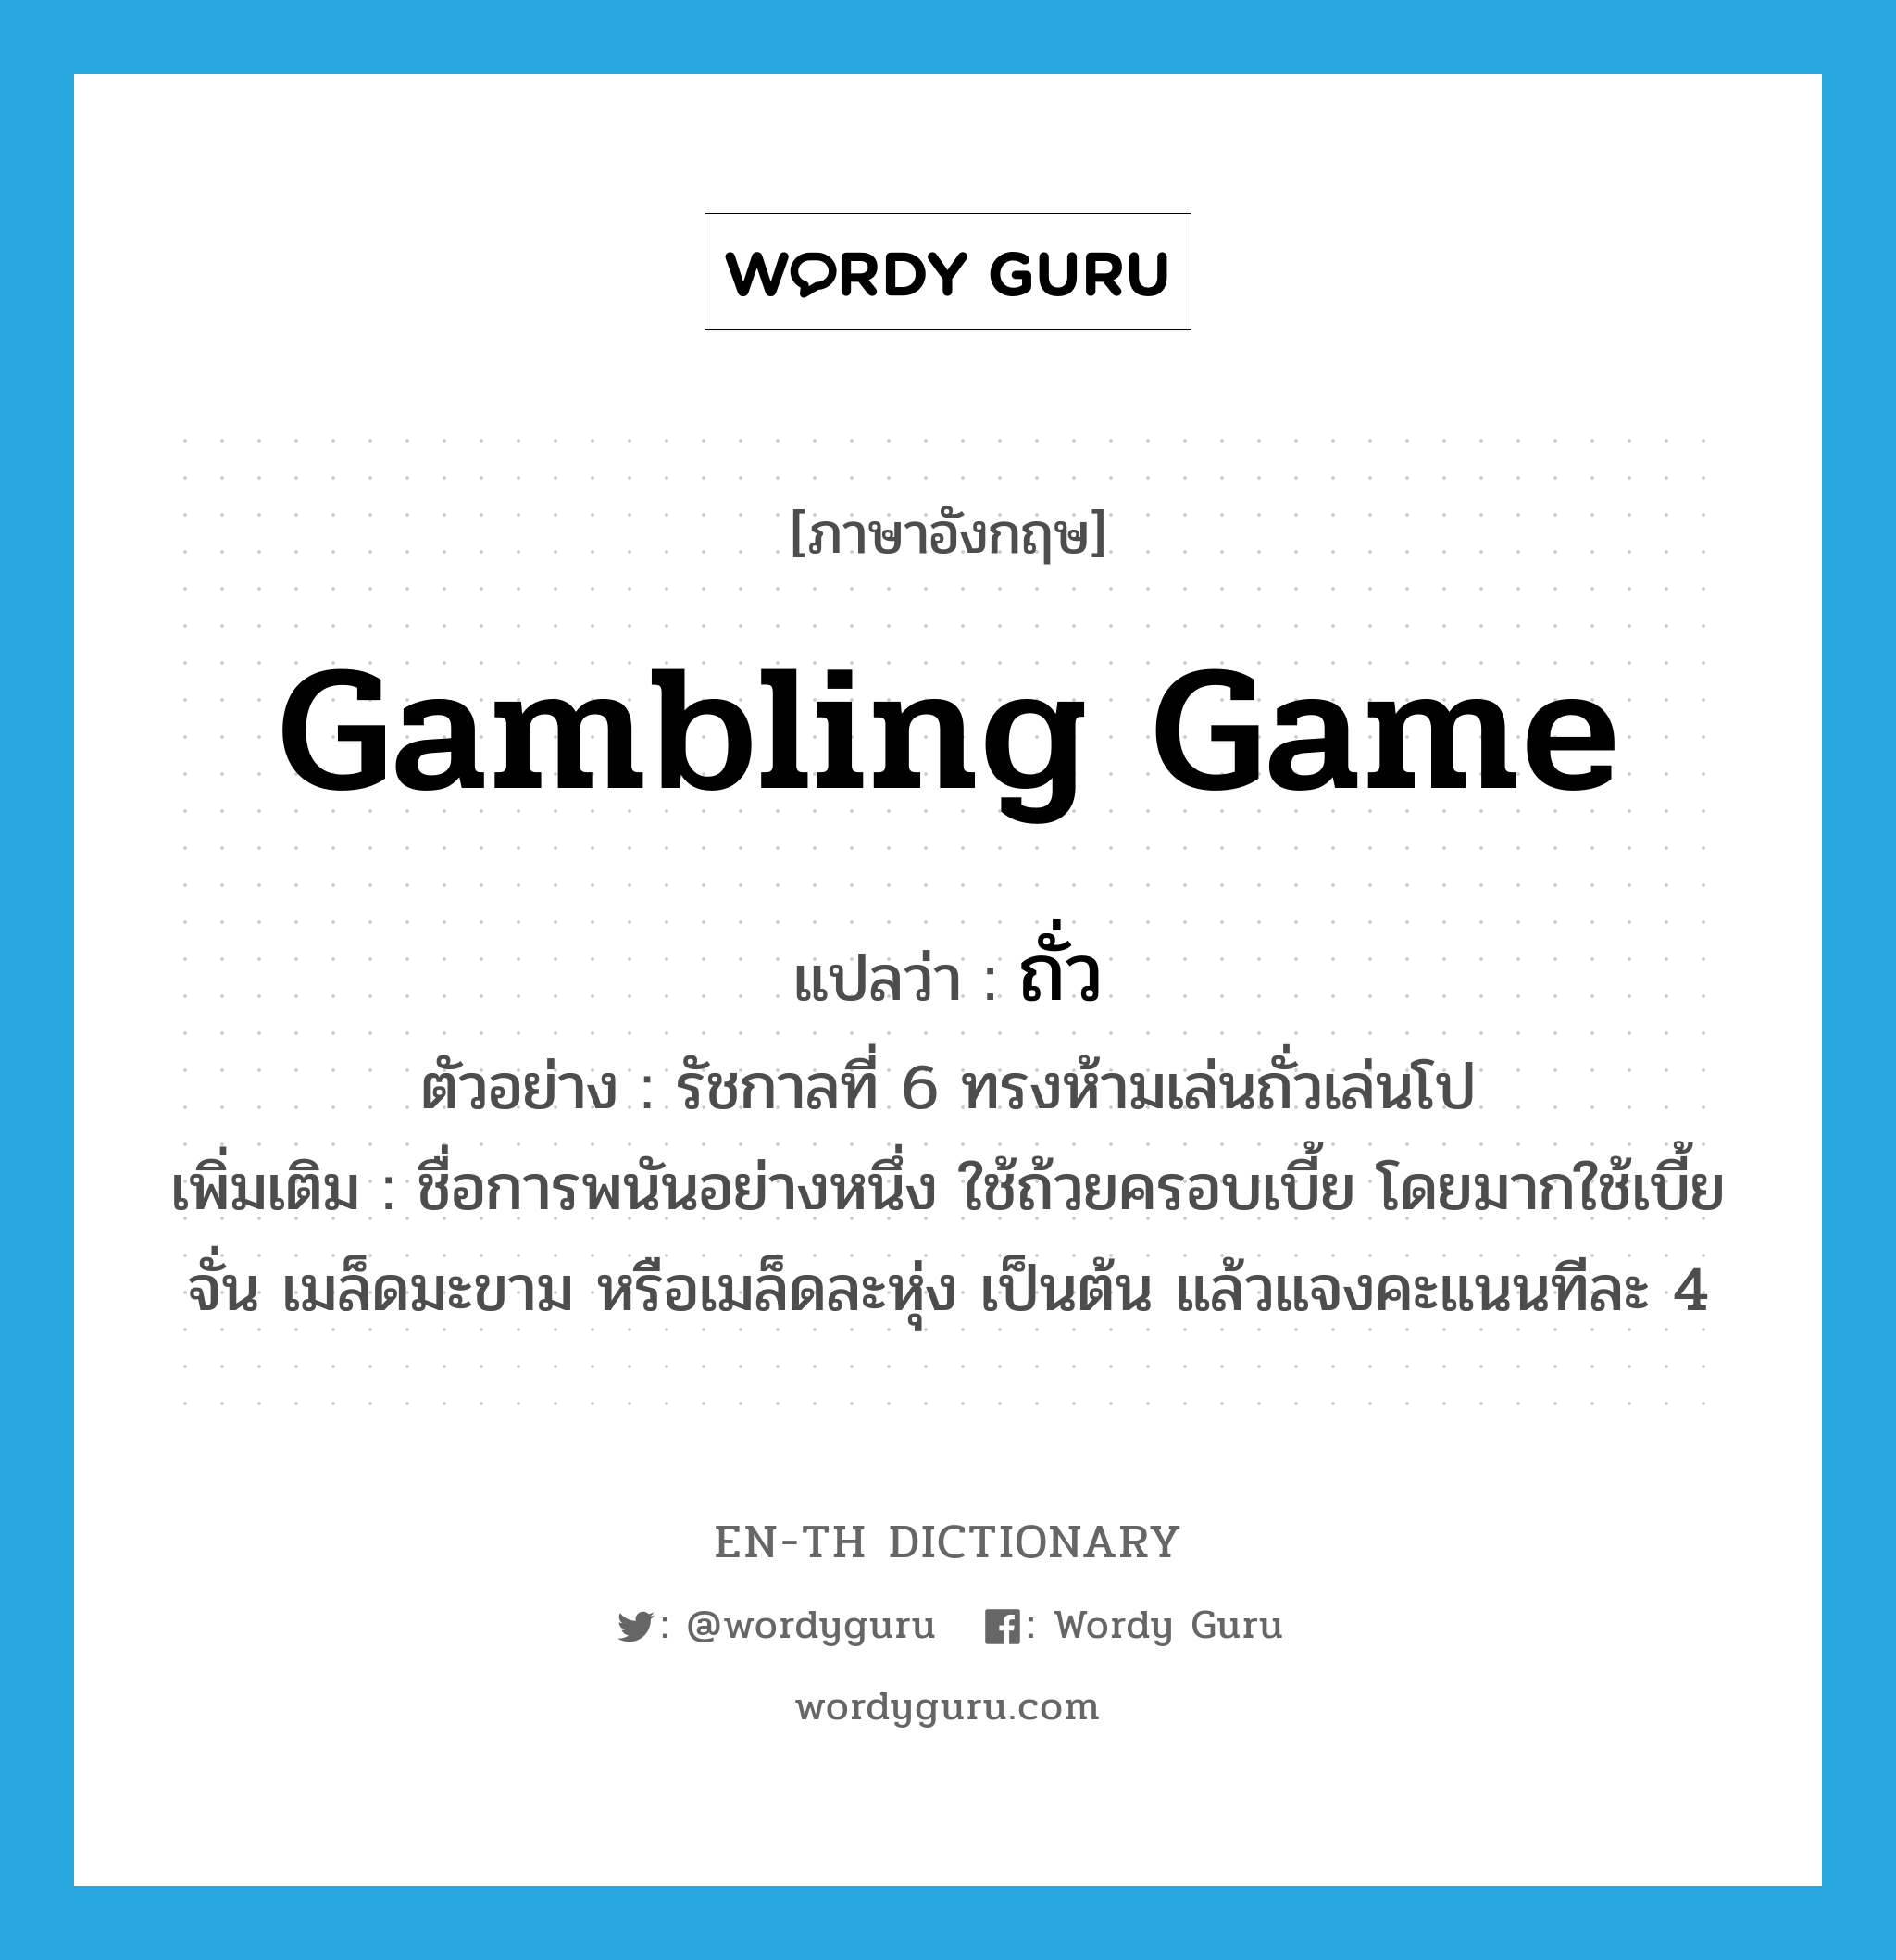 gambling game แปลว่า?, คำศัพท์ภาษาอังกฤษ gambling game แปลว่า ถั่ว ประเภท N ตัวอย่าง รัชกาลที่ 6 ทรงห้ามเล่นถั่วเล่นโป เพิ่มเติม ชื่อการพนันอย่างหนึ่ง ใช้ถ้วยครอบเบี้ย โดยมากใช้เบี้ยจั่น เมล็ดมะขาม หรือเมล็ดละหุ่ง เป็นต้น แล้วแจงคะแนนทีละ 4 หมวด N